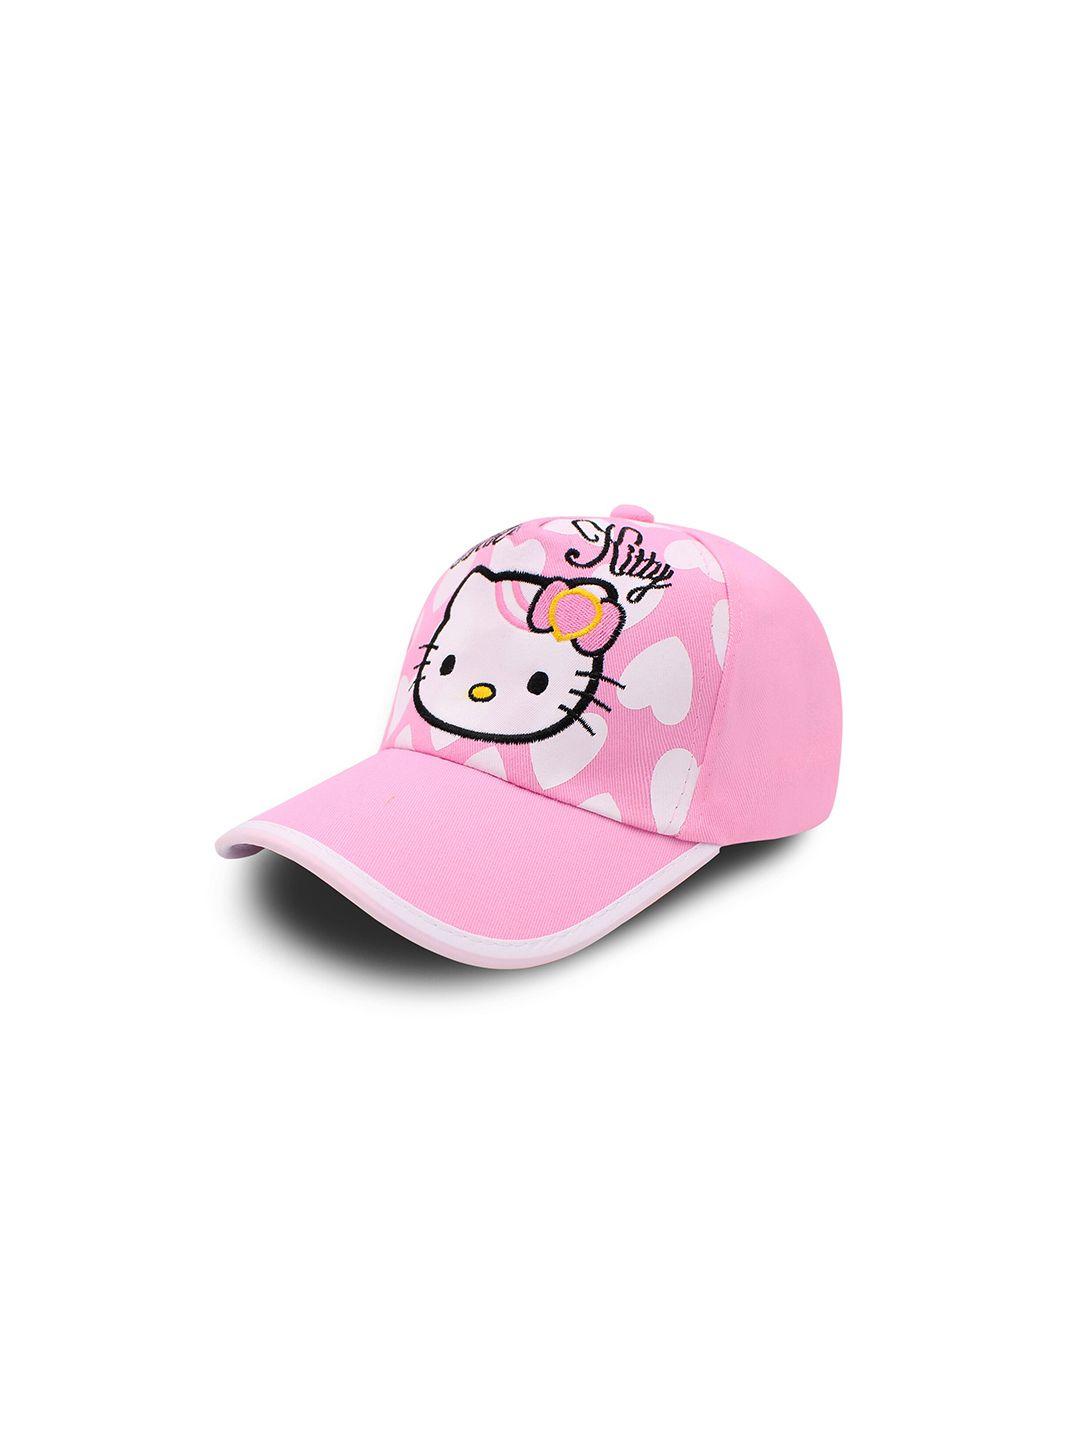 jenna kids hello kitty embroidered cotton baseball cap